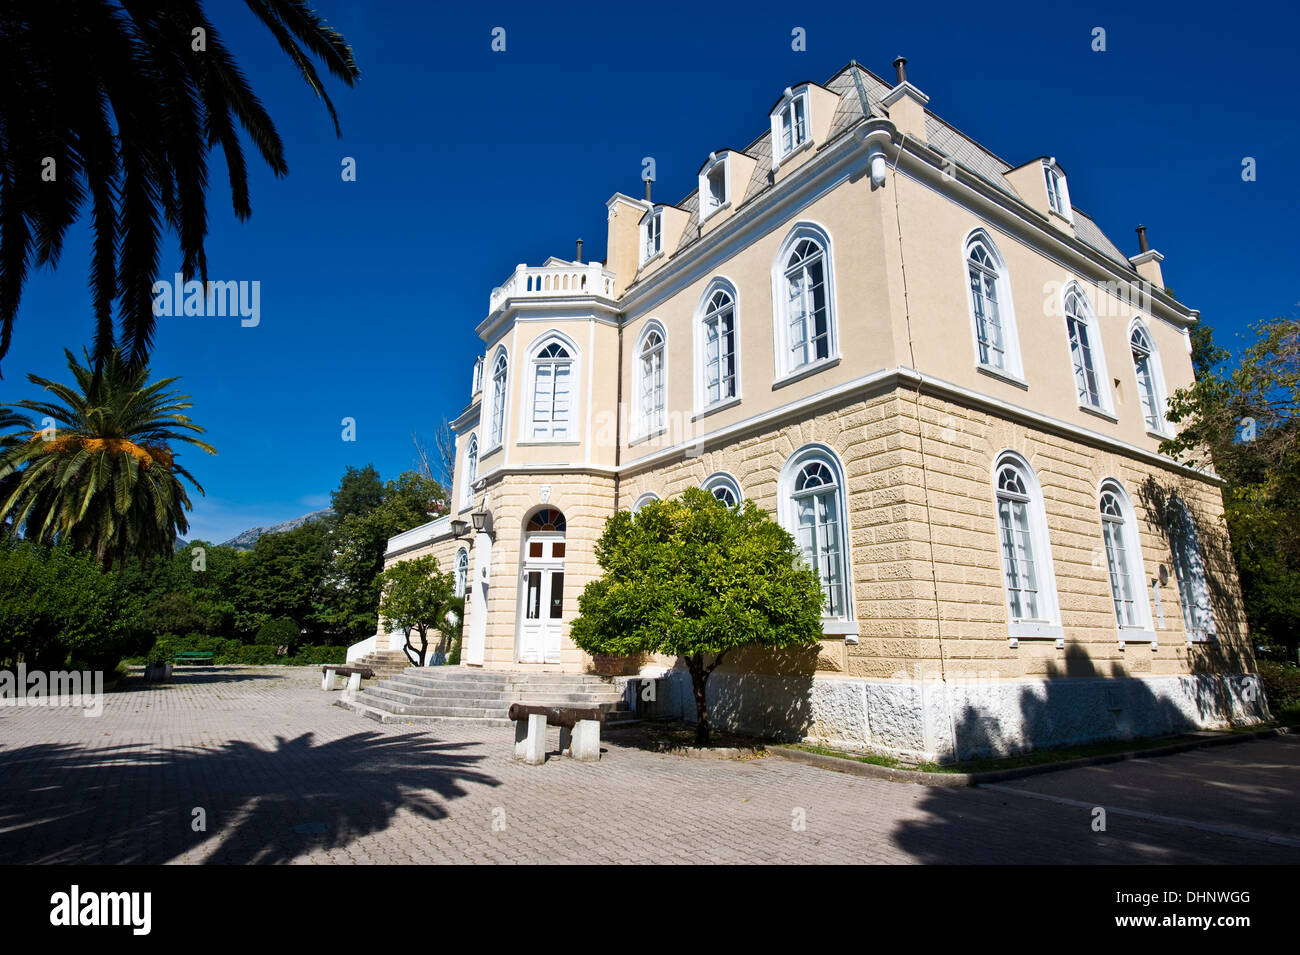 Musée de patrie dans la King's palace de Nicola Bar City, Crna Gora, Monténégro Banque D'Images